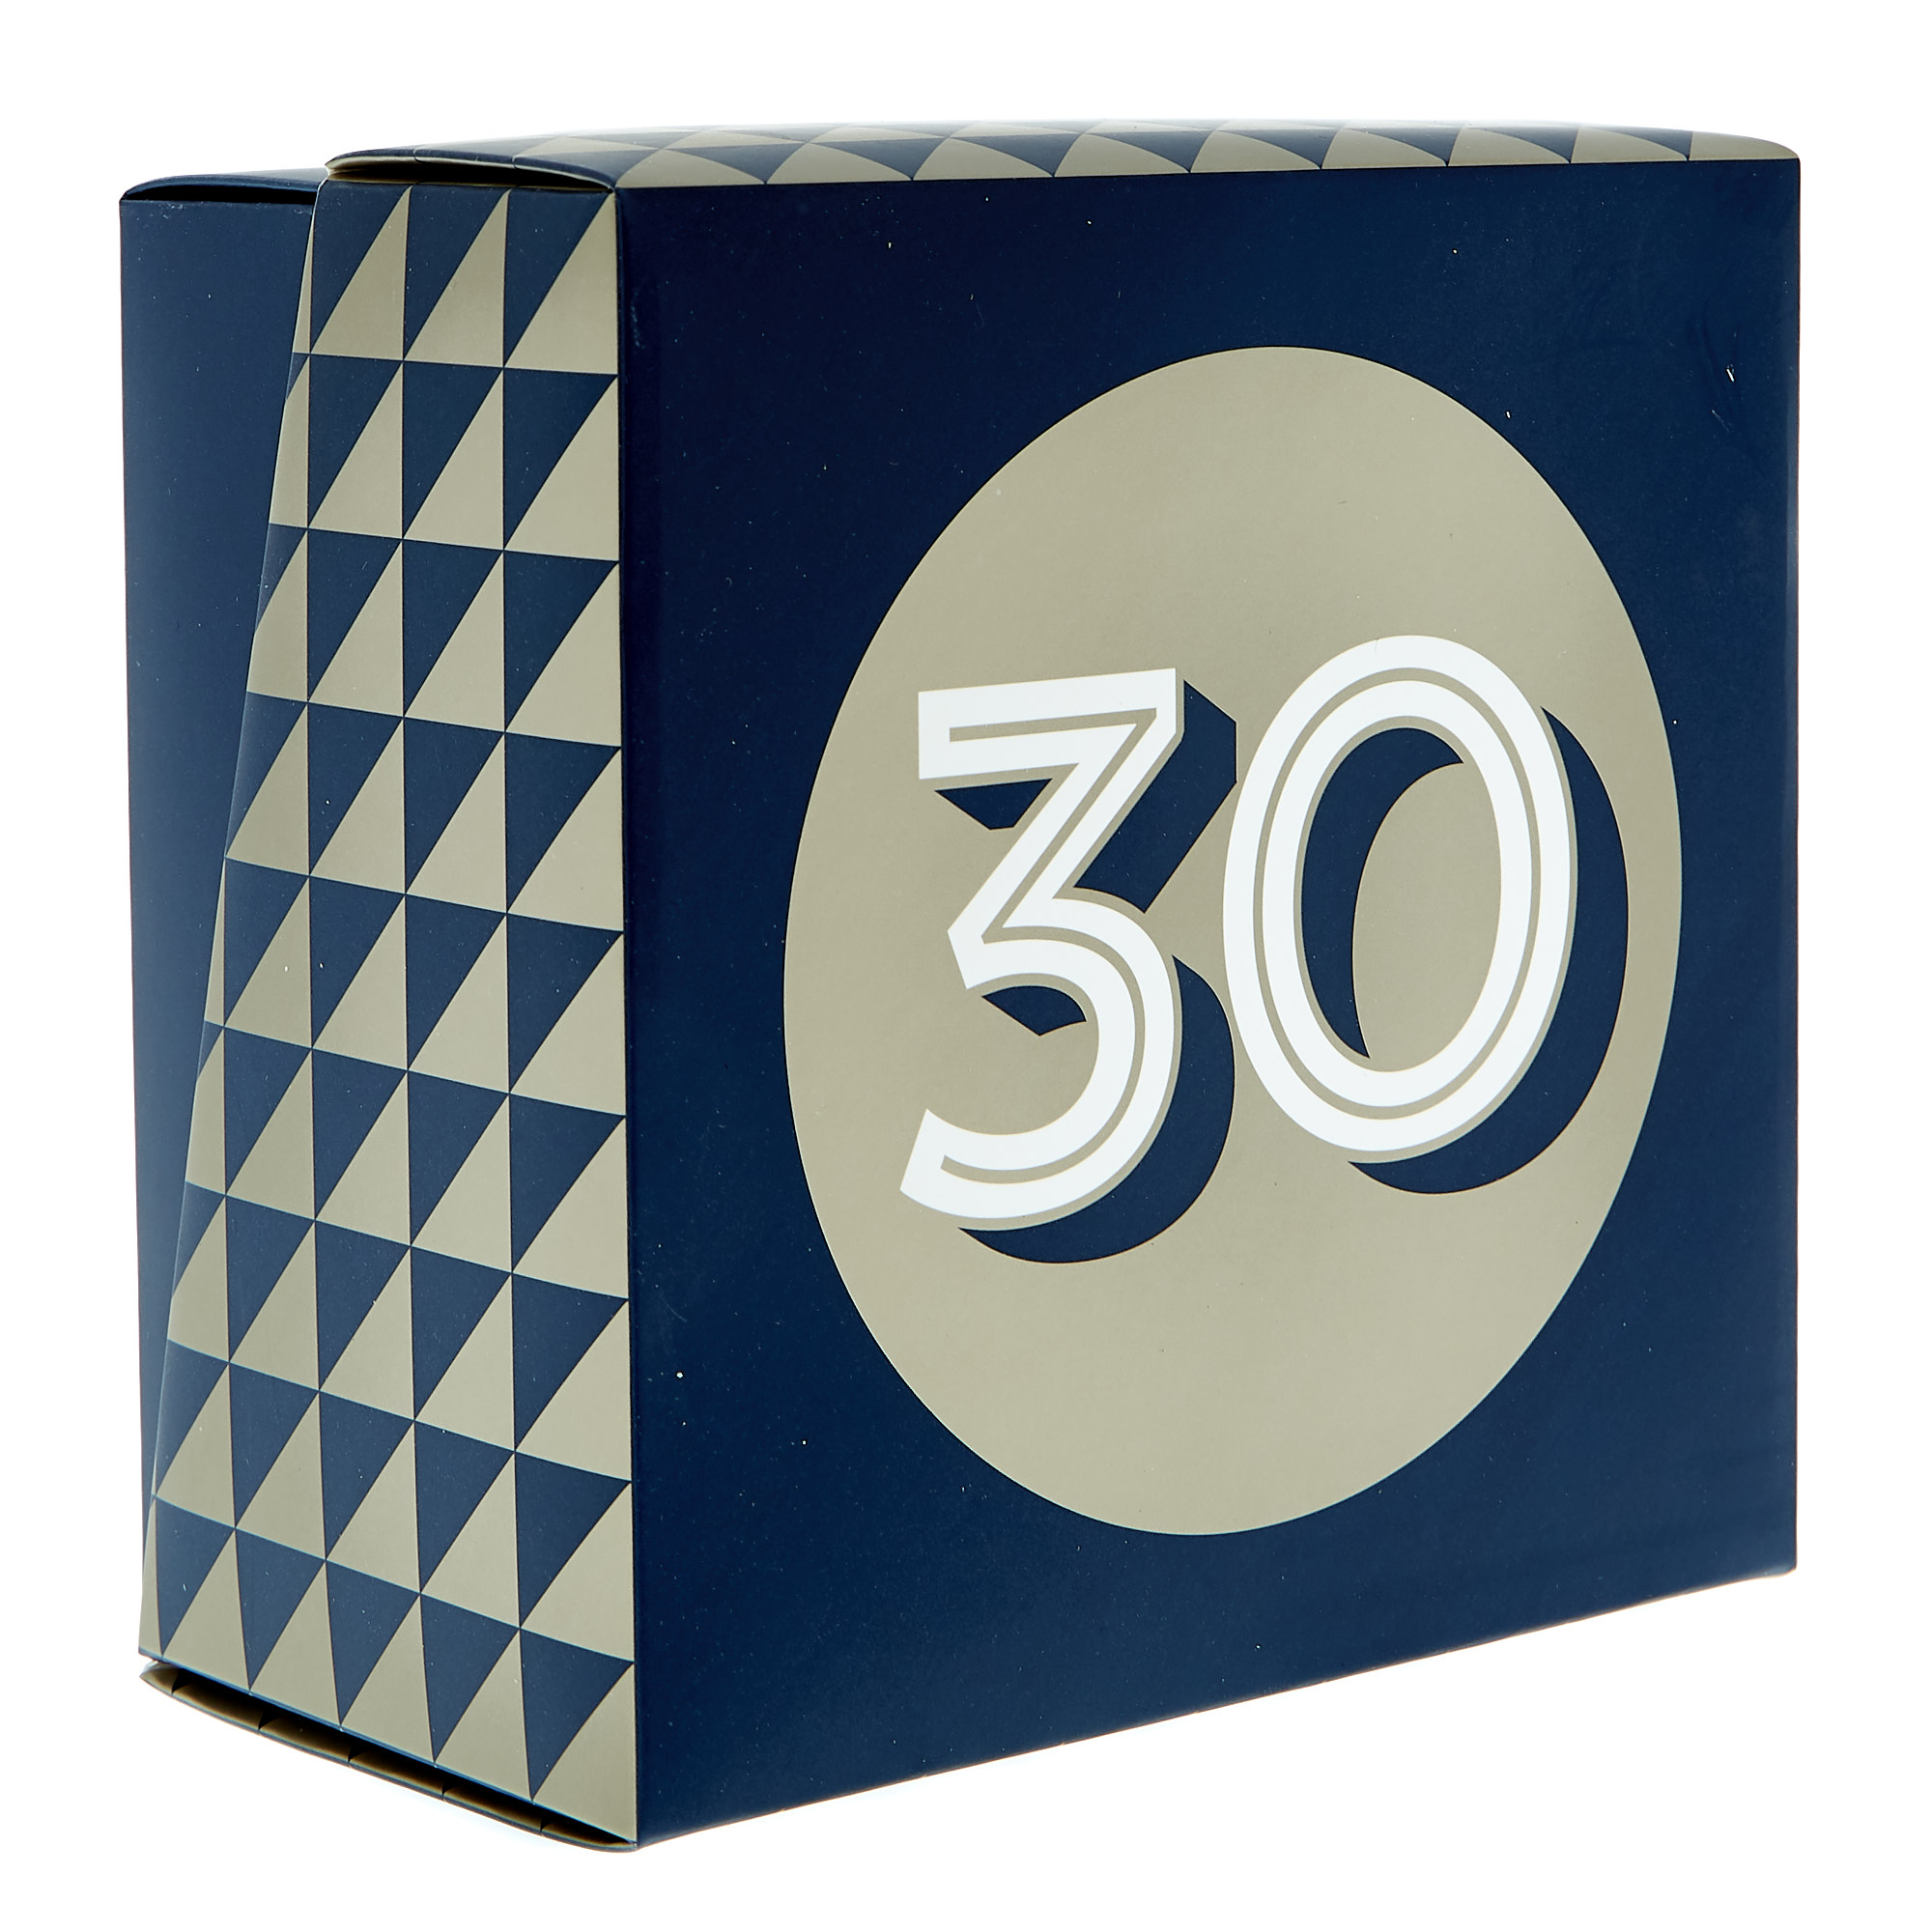 30th Birthday Mug In A Box - Blue & Gold 